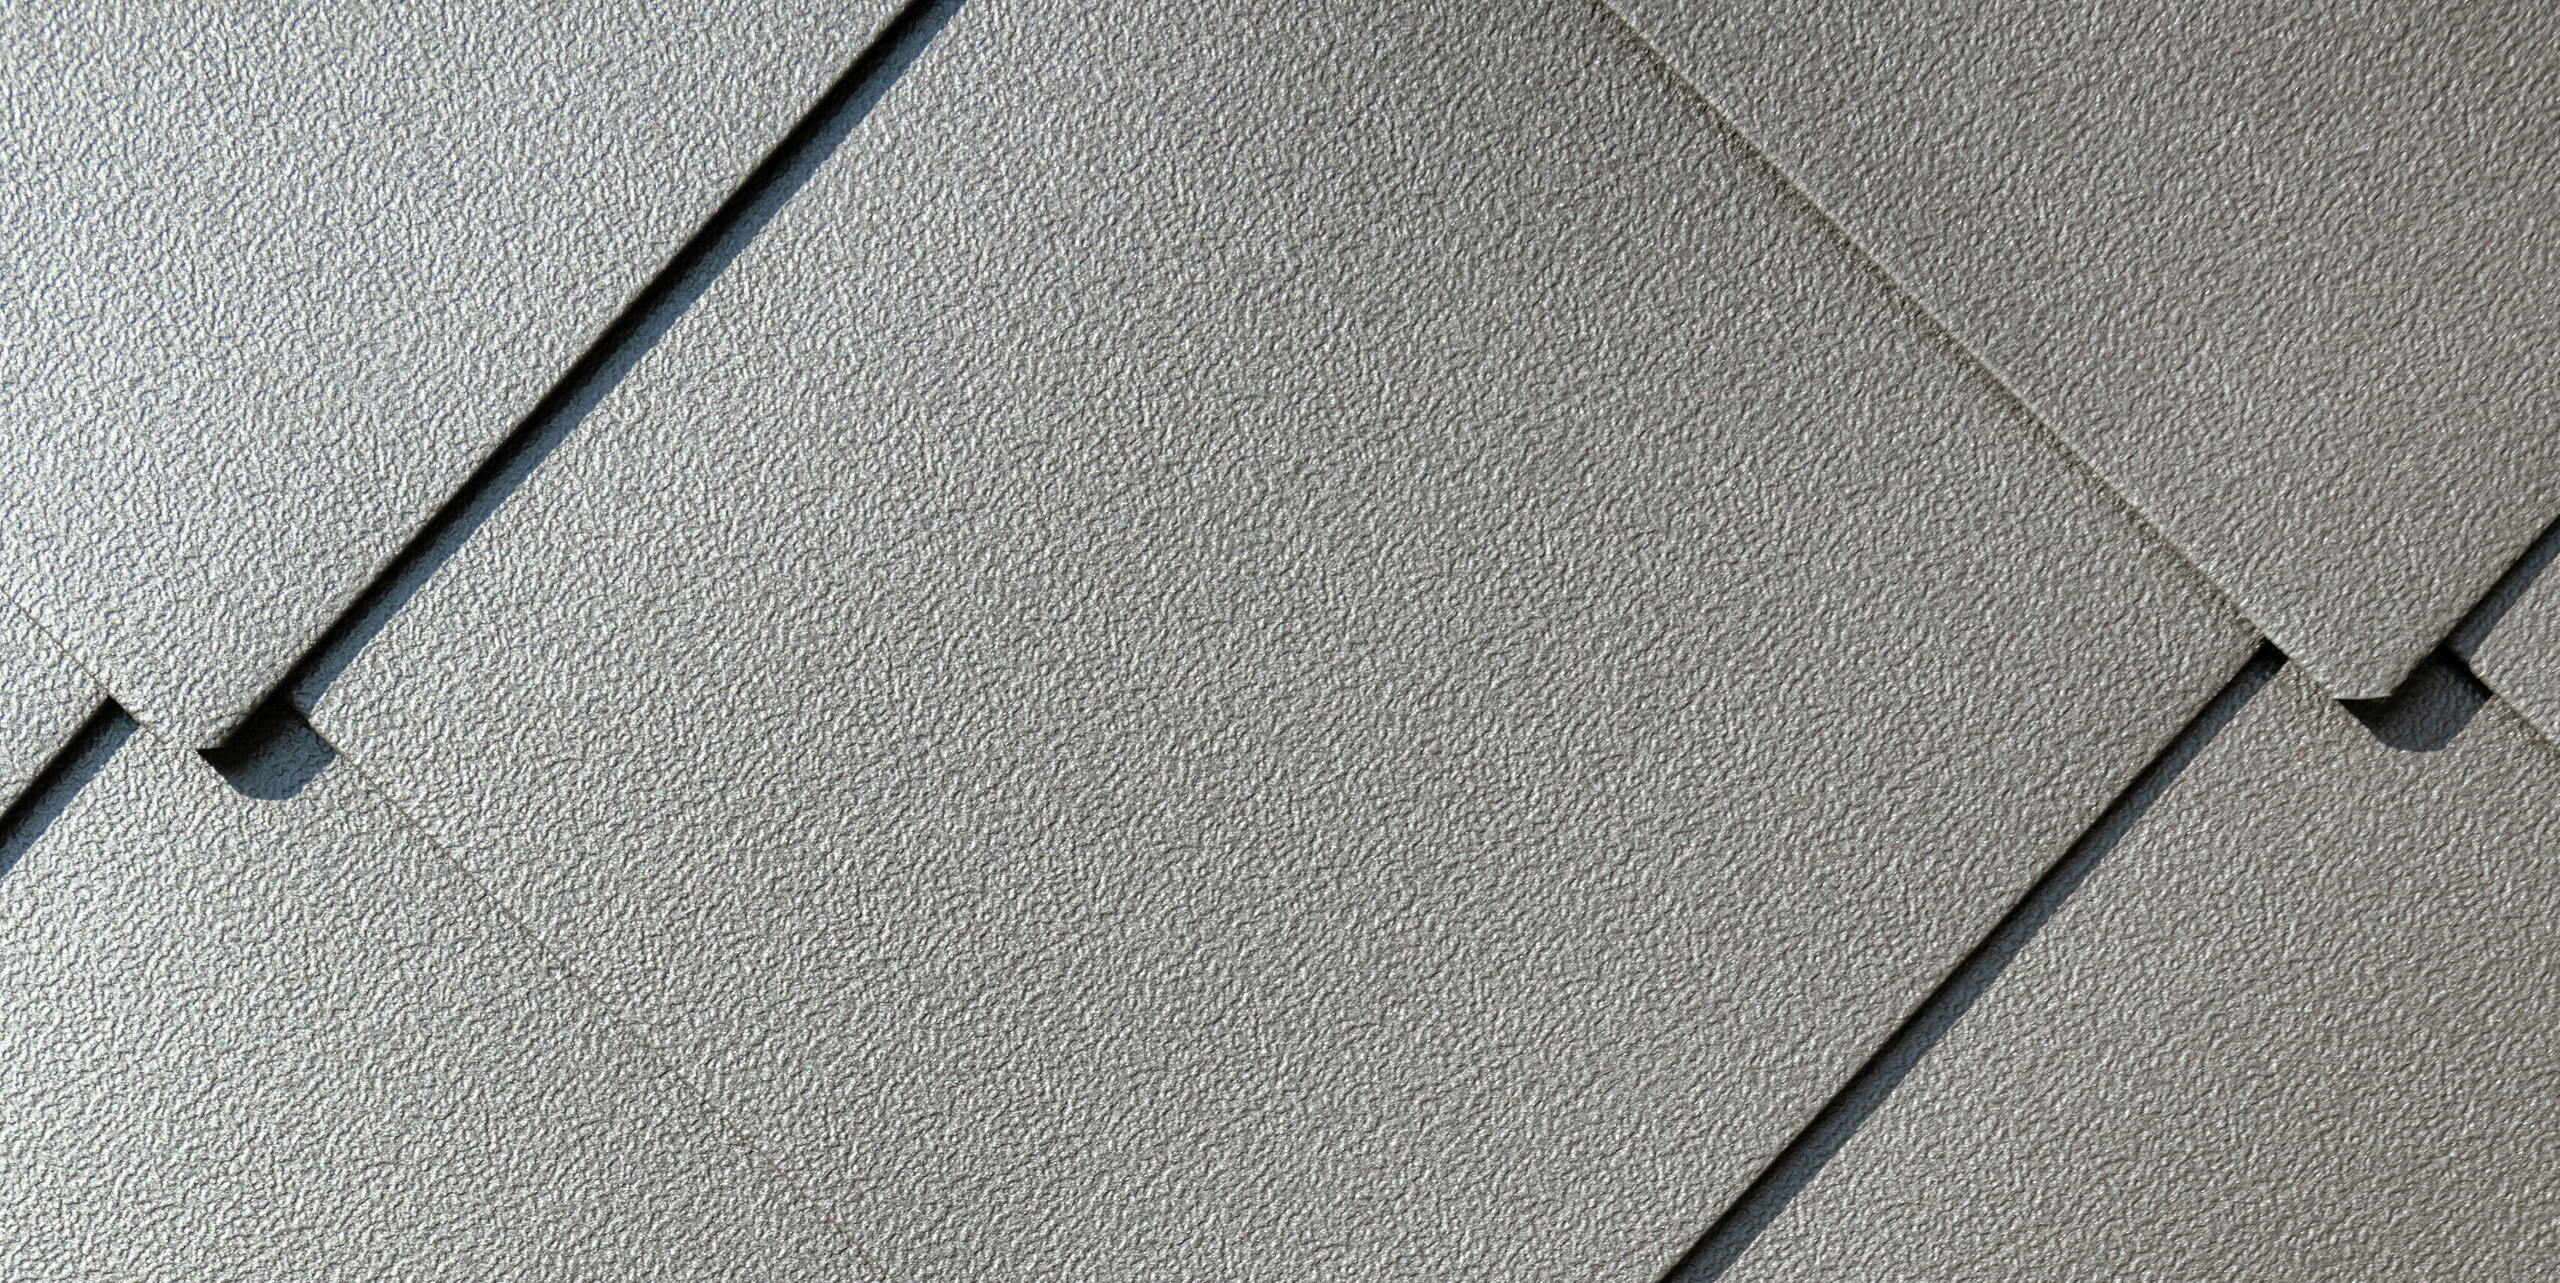 Prístrešok v Allevard bol pokrytý strešnou šablónou PREFA 44x44 vo farbe orieškovohnedá P.10.